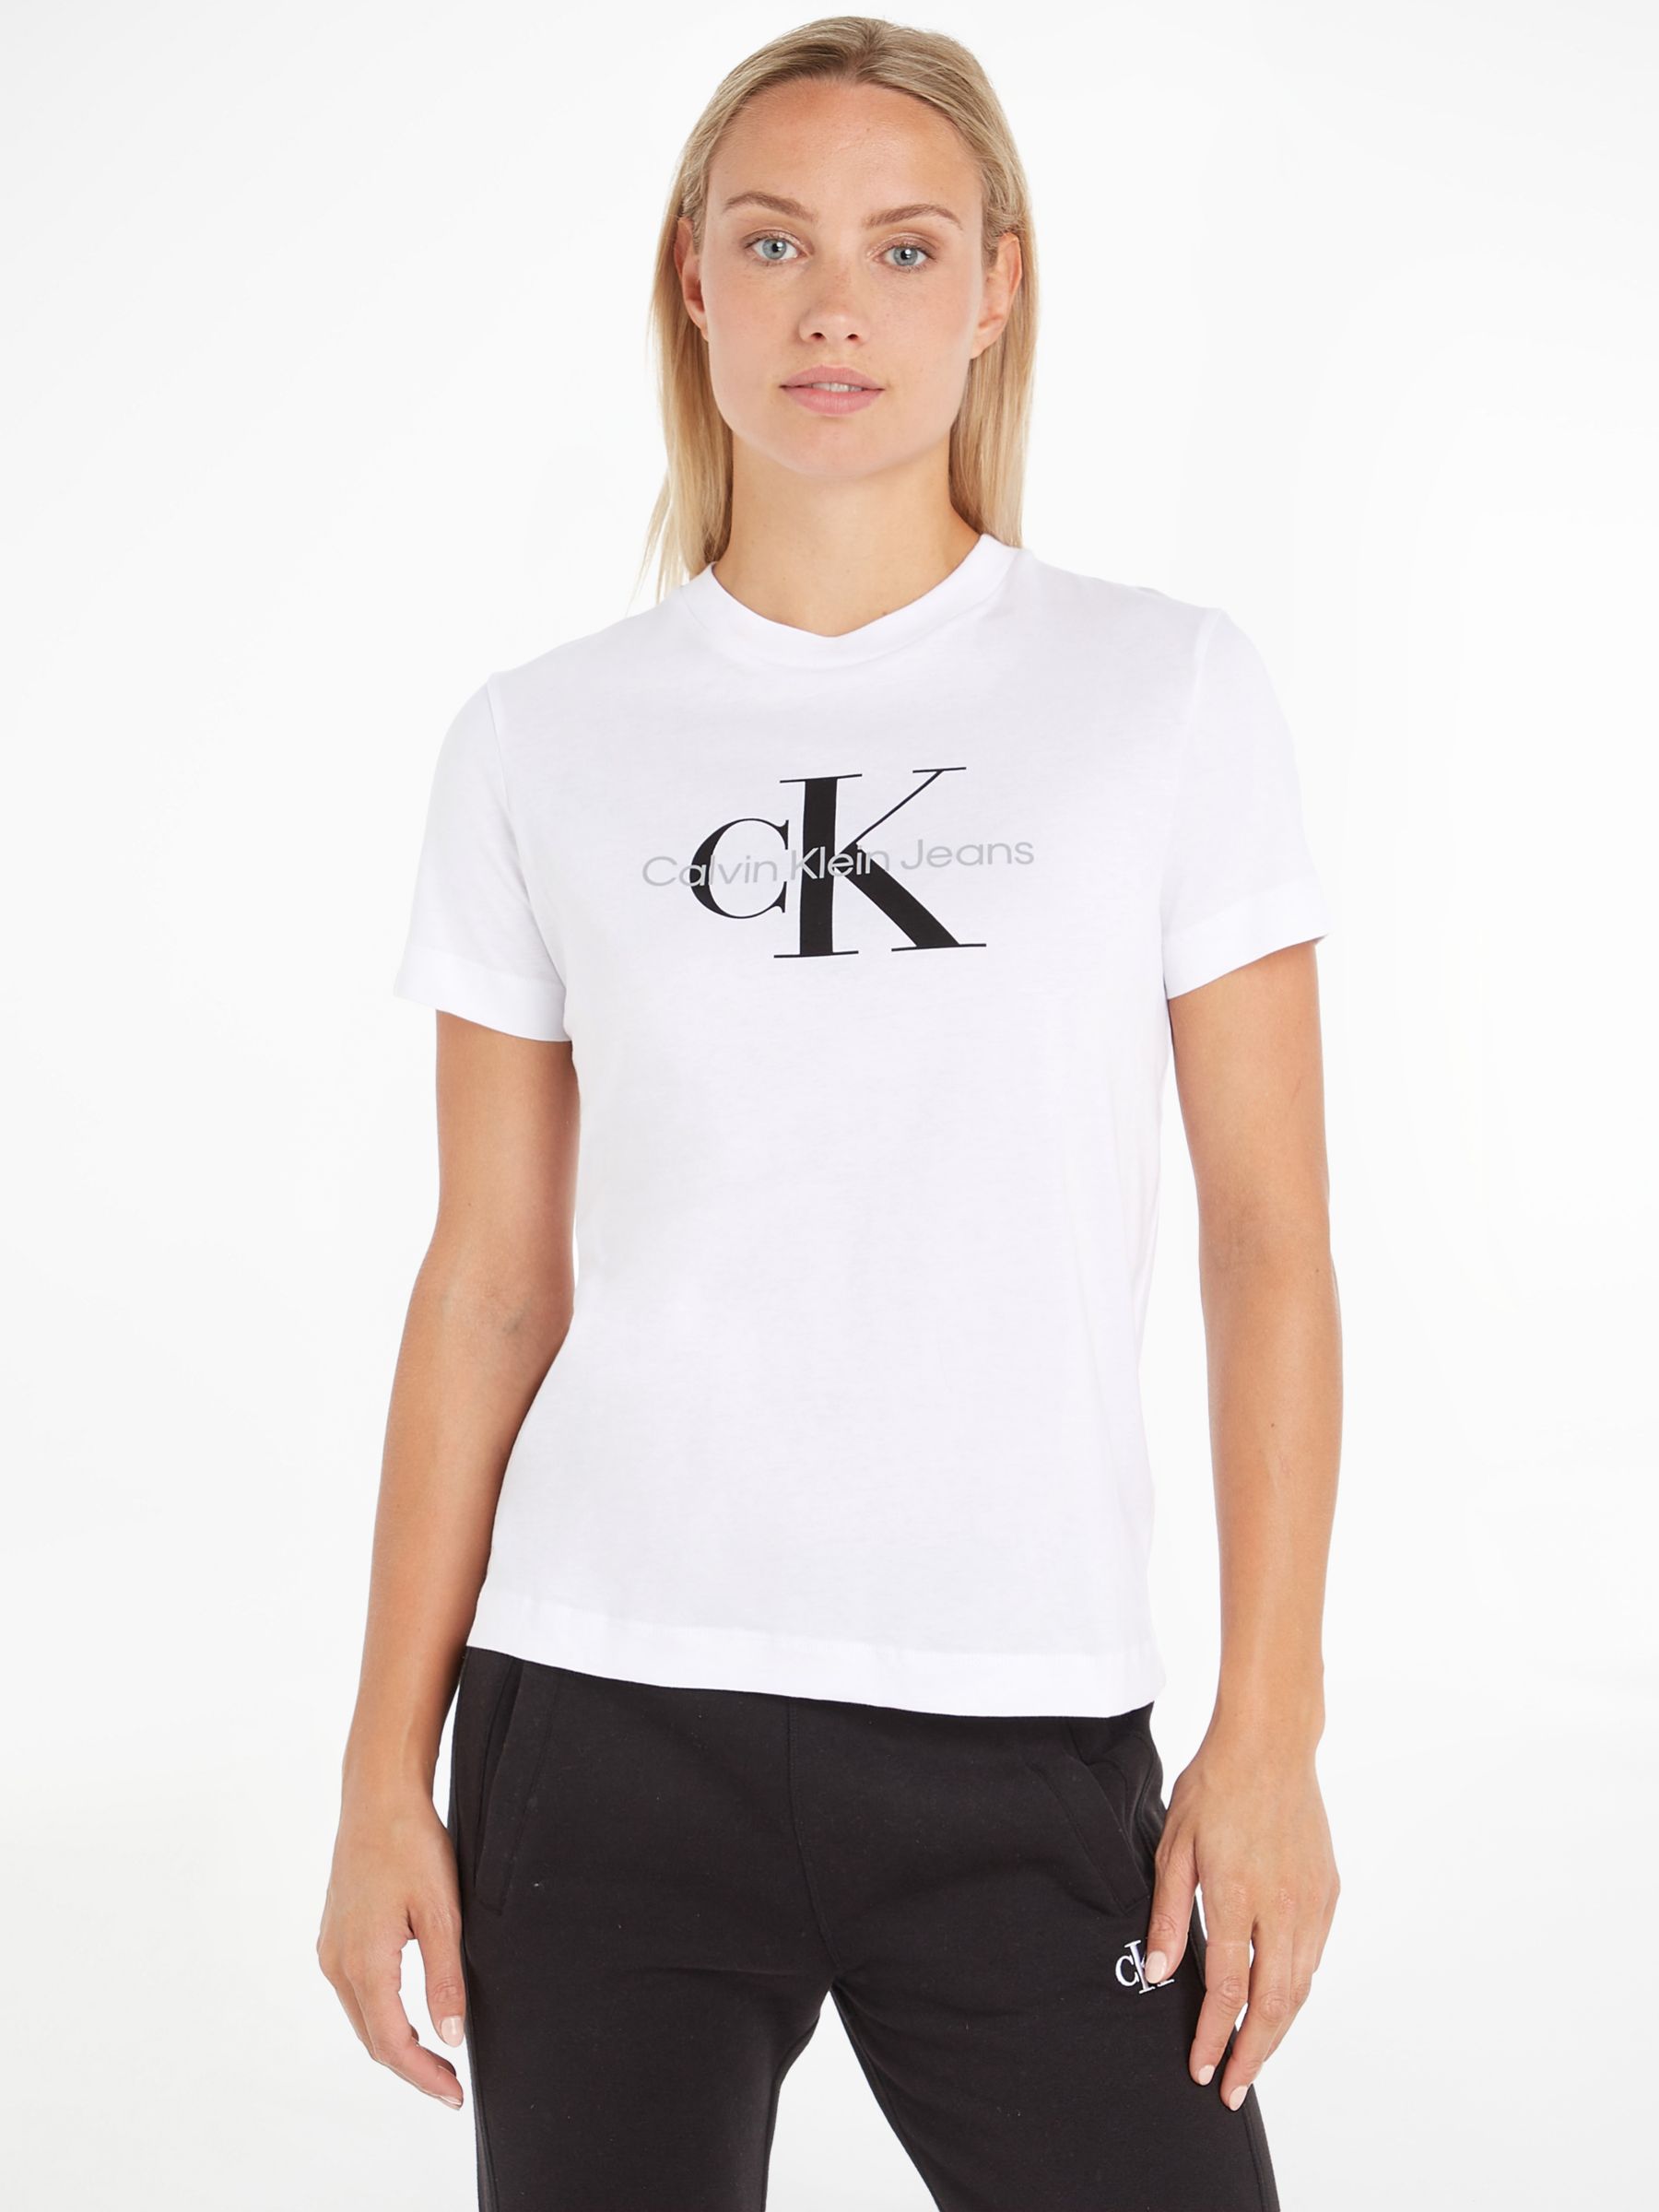 Klein Logo T-Shirt, Bright & John White at Monogram Partners Calvin Lewis